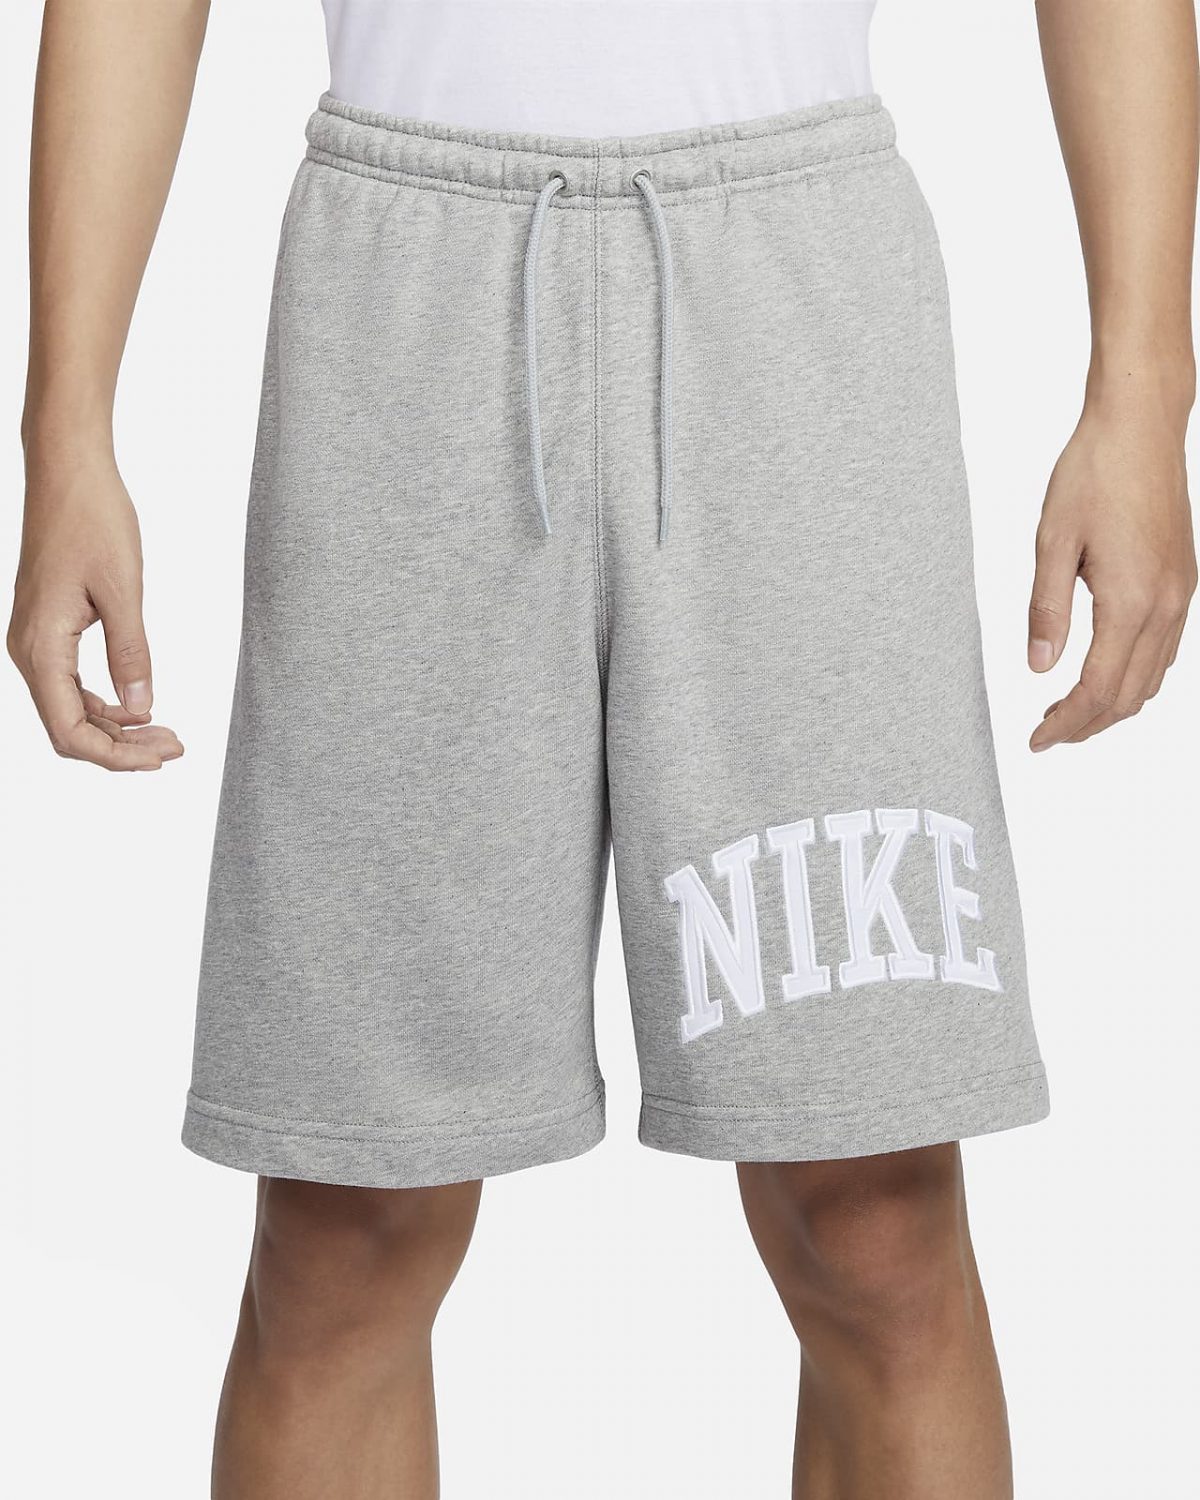 Мужские шорты Nike Sportswear Club белые фотография